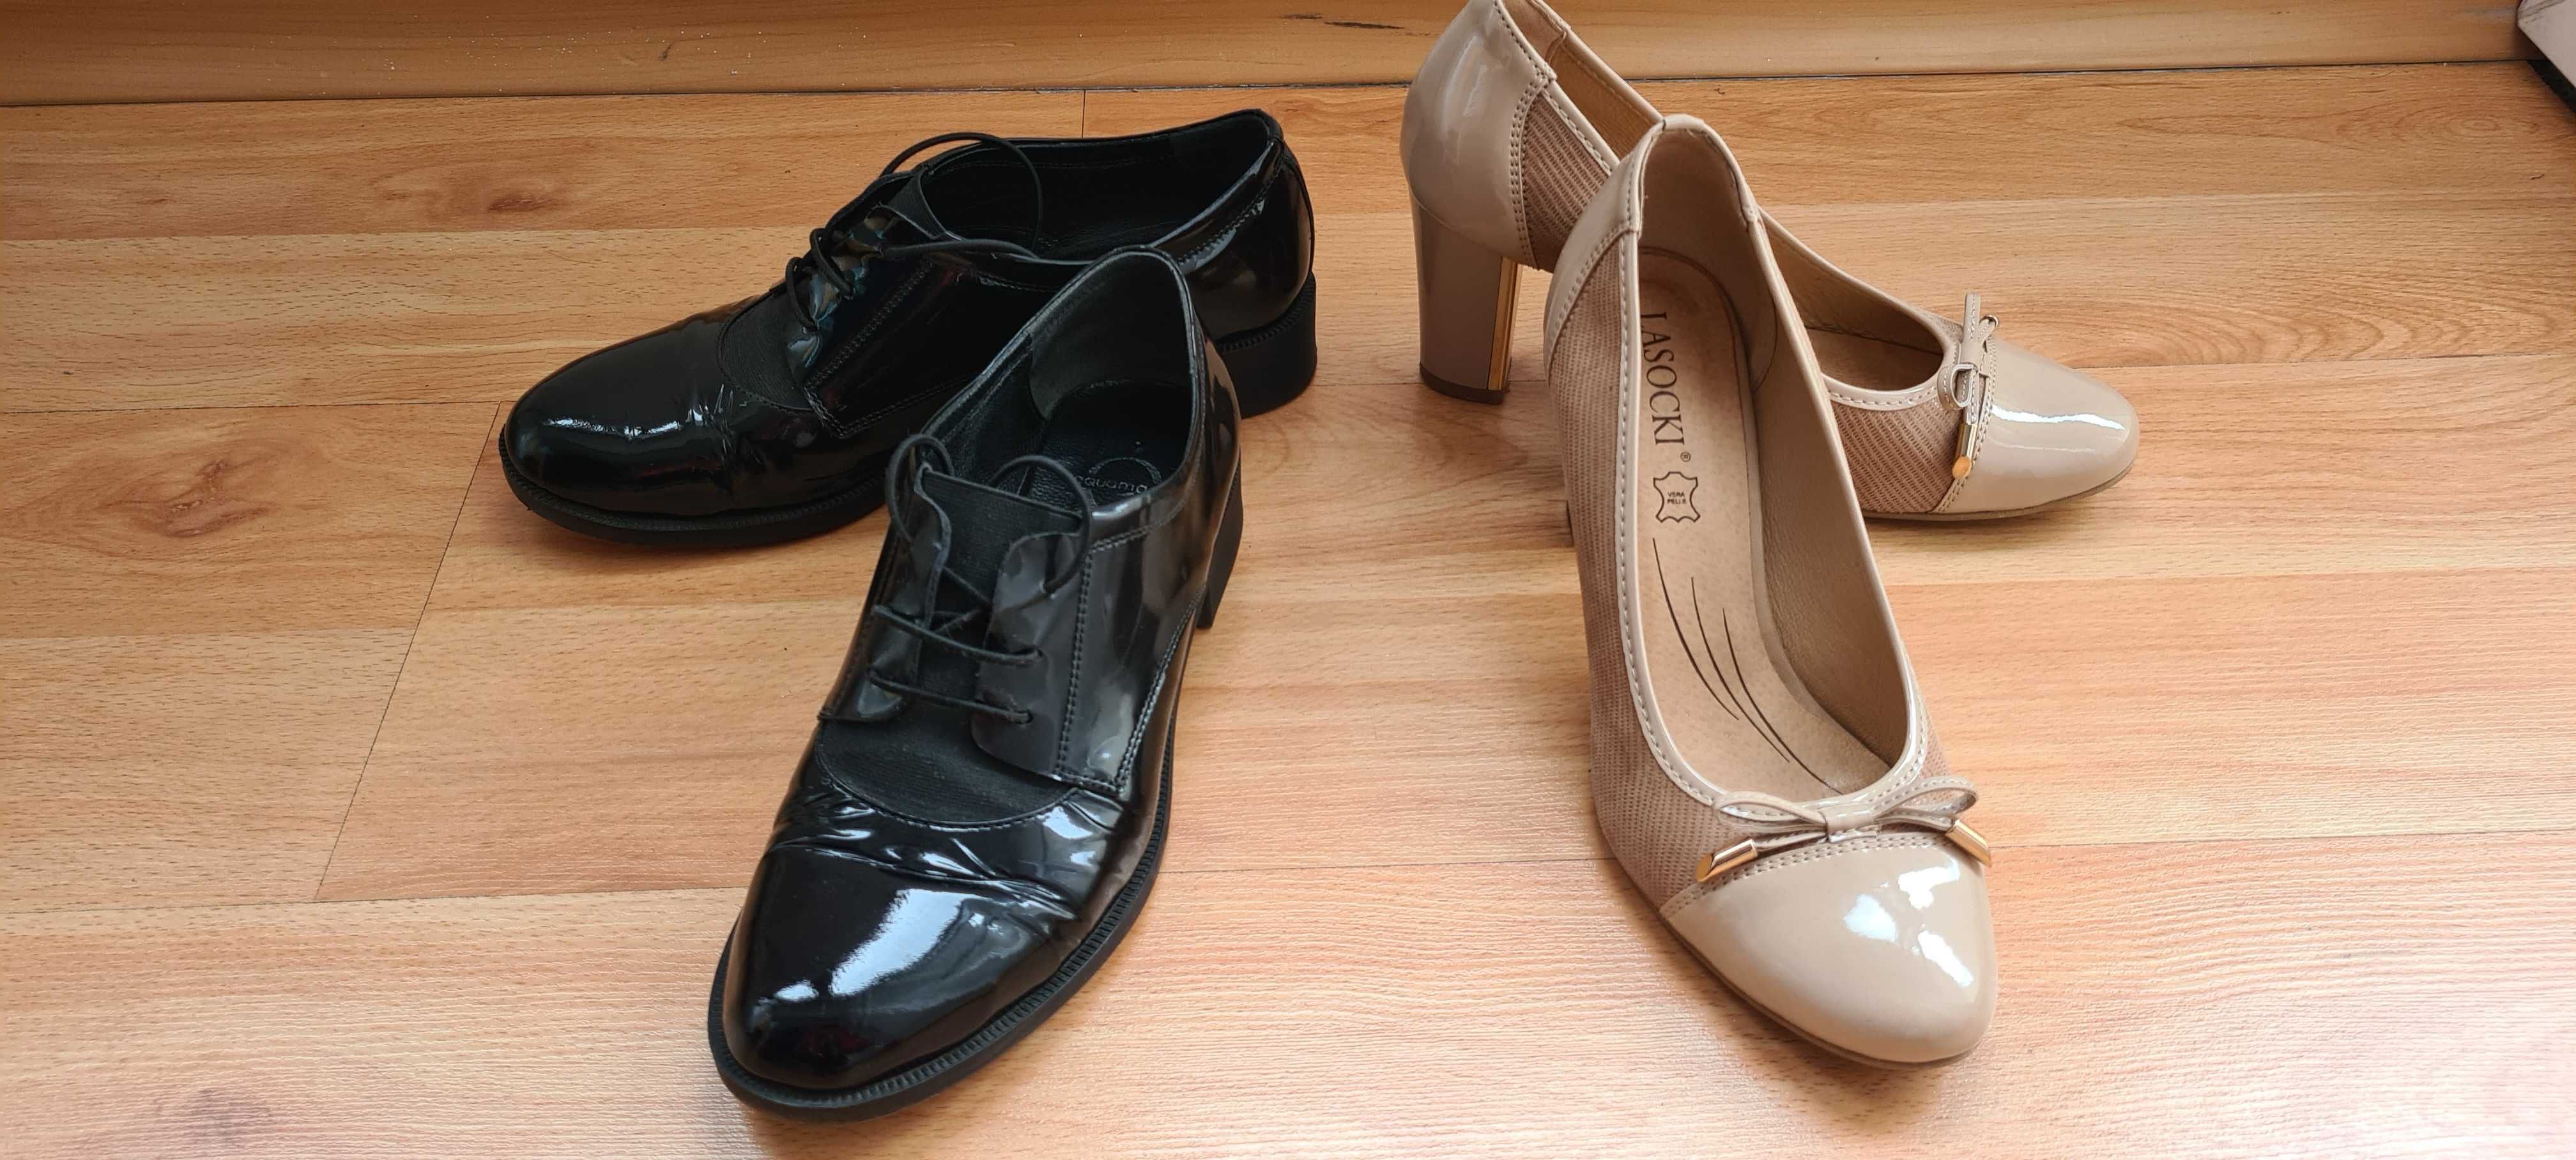 Черни равни лачени обувки Aquamarine и официални обувки на ток - 3 бр.